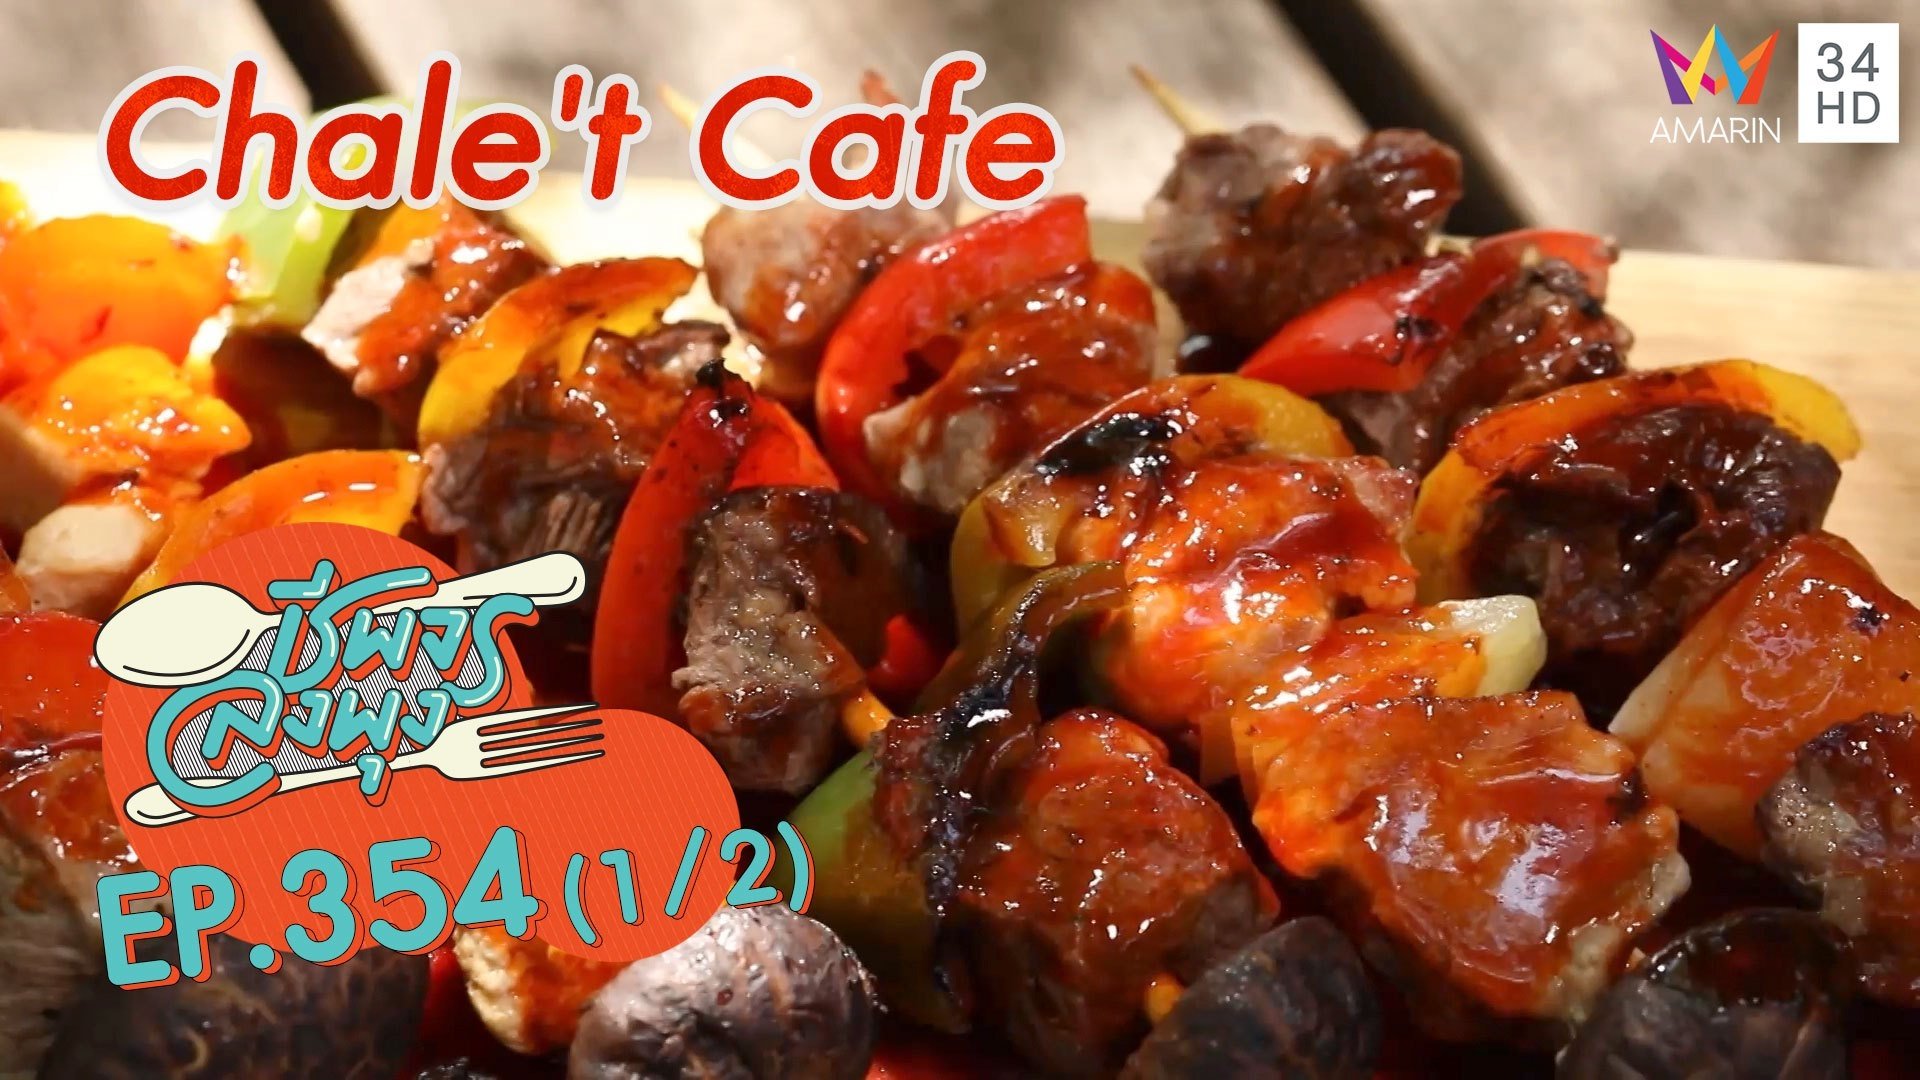 ปาร์ตี้บาร์บีคิวแสนอร่อย @ ร้าน Chale't Cafe | ชีพจรลงพุง | 26 ธ.ค. 64 (1/2) | AMARIN TVHD34